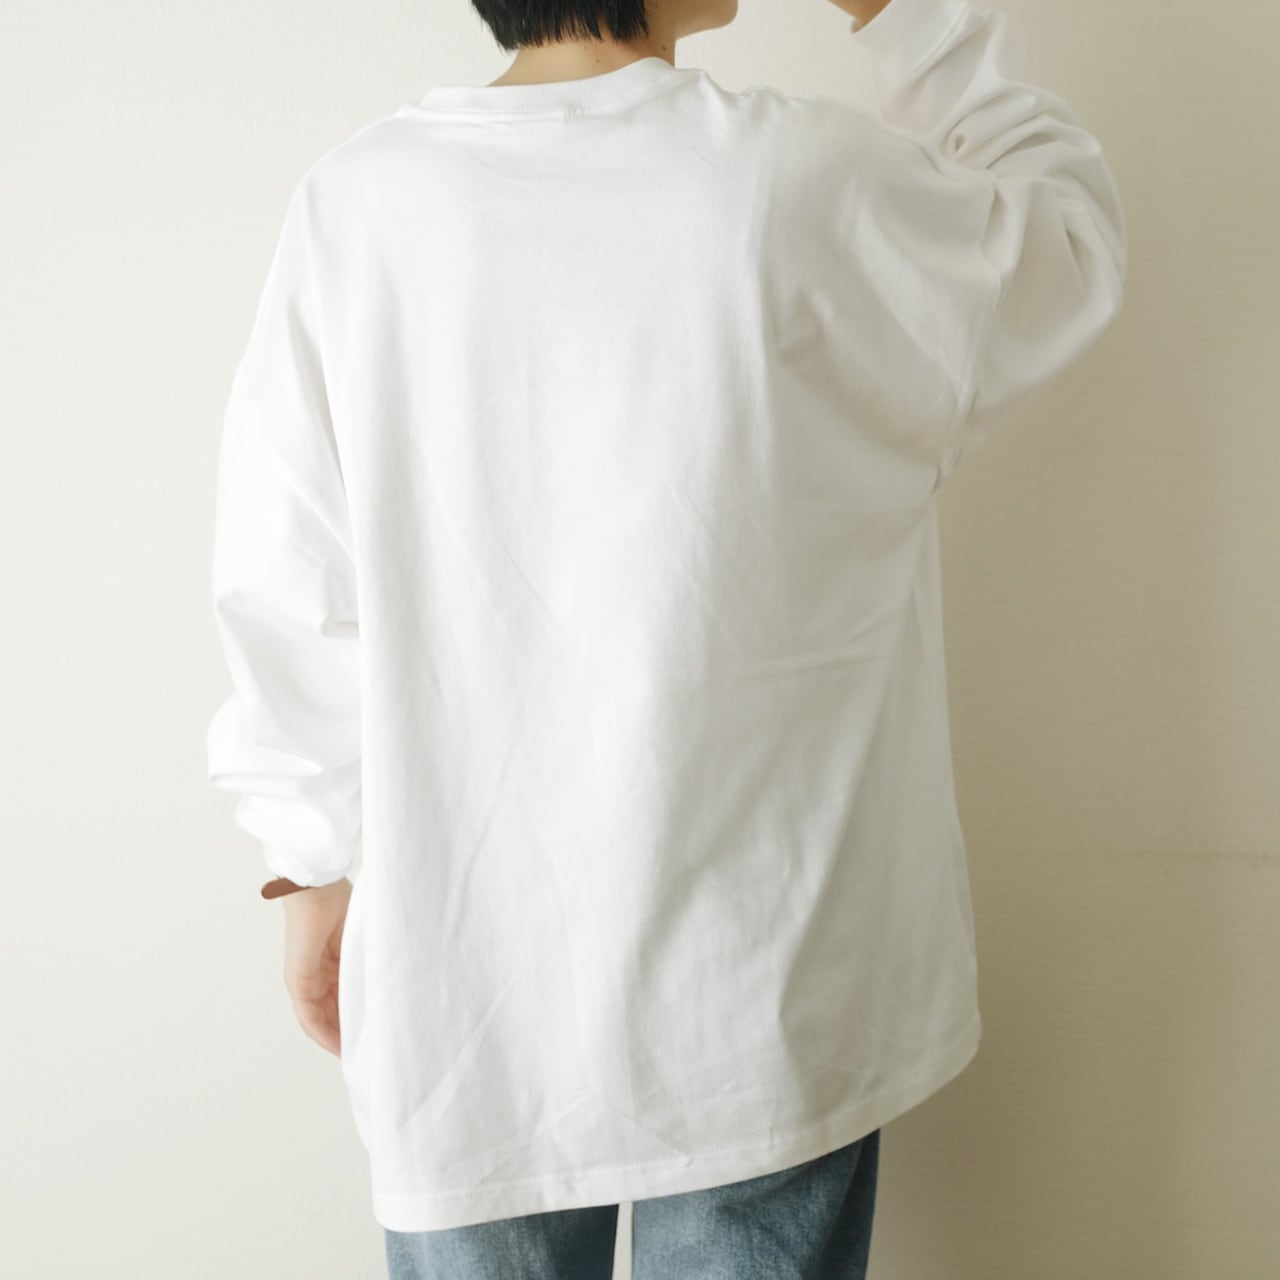 "I am what I am." Long-sleeve shirt (White)